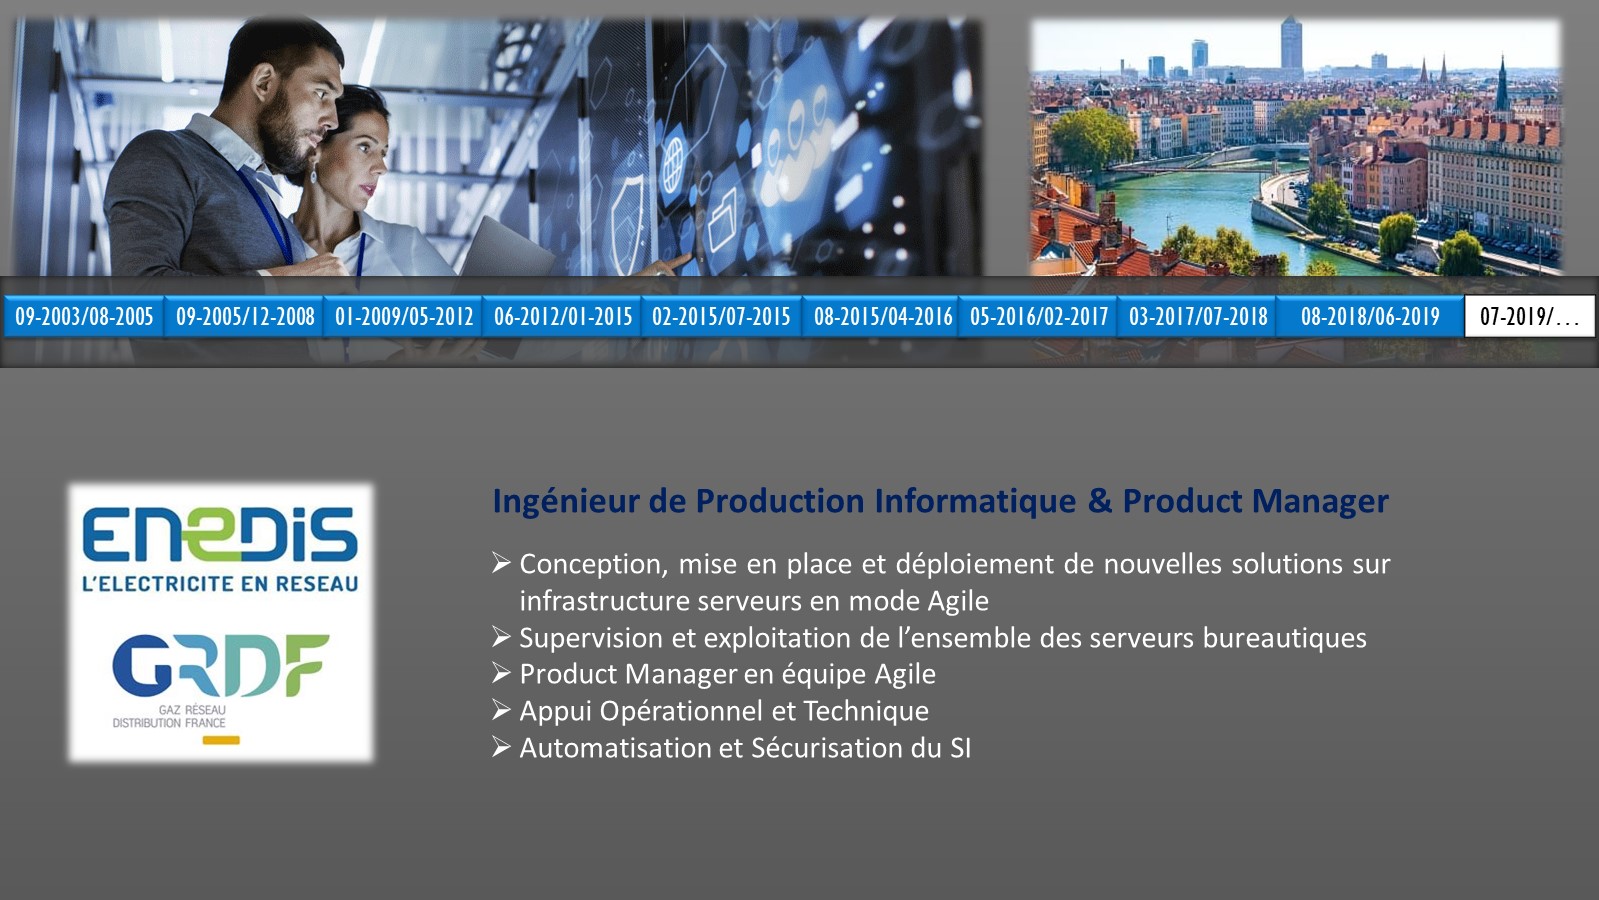 Ingénieur de Production Informatique & Product Manager